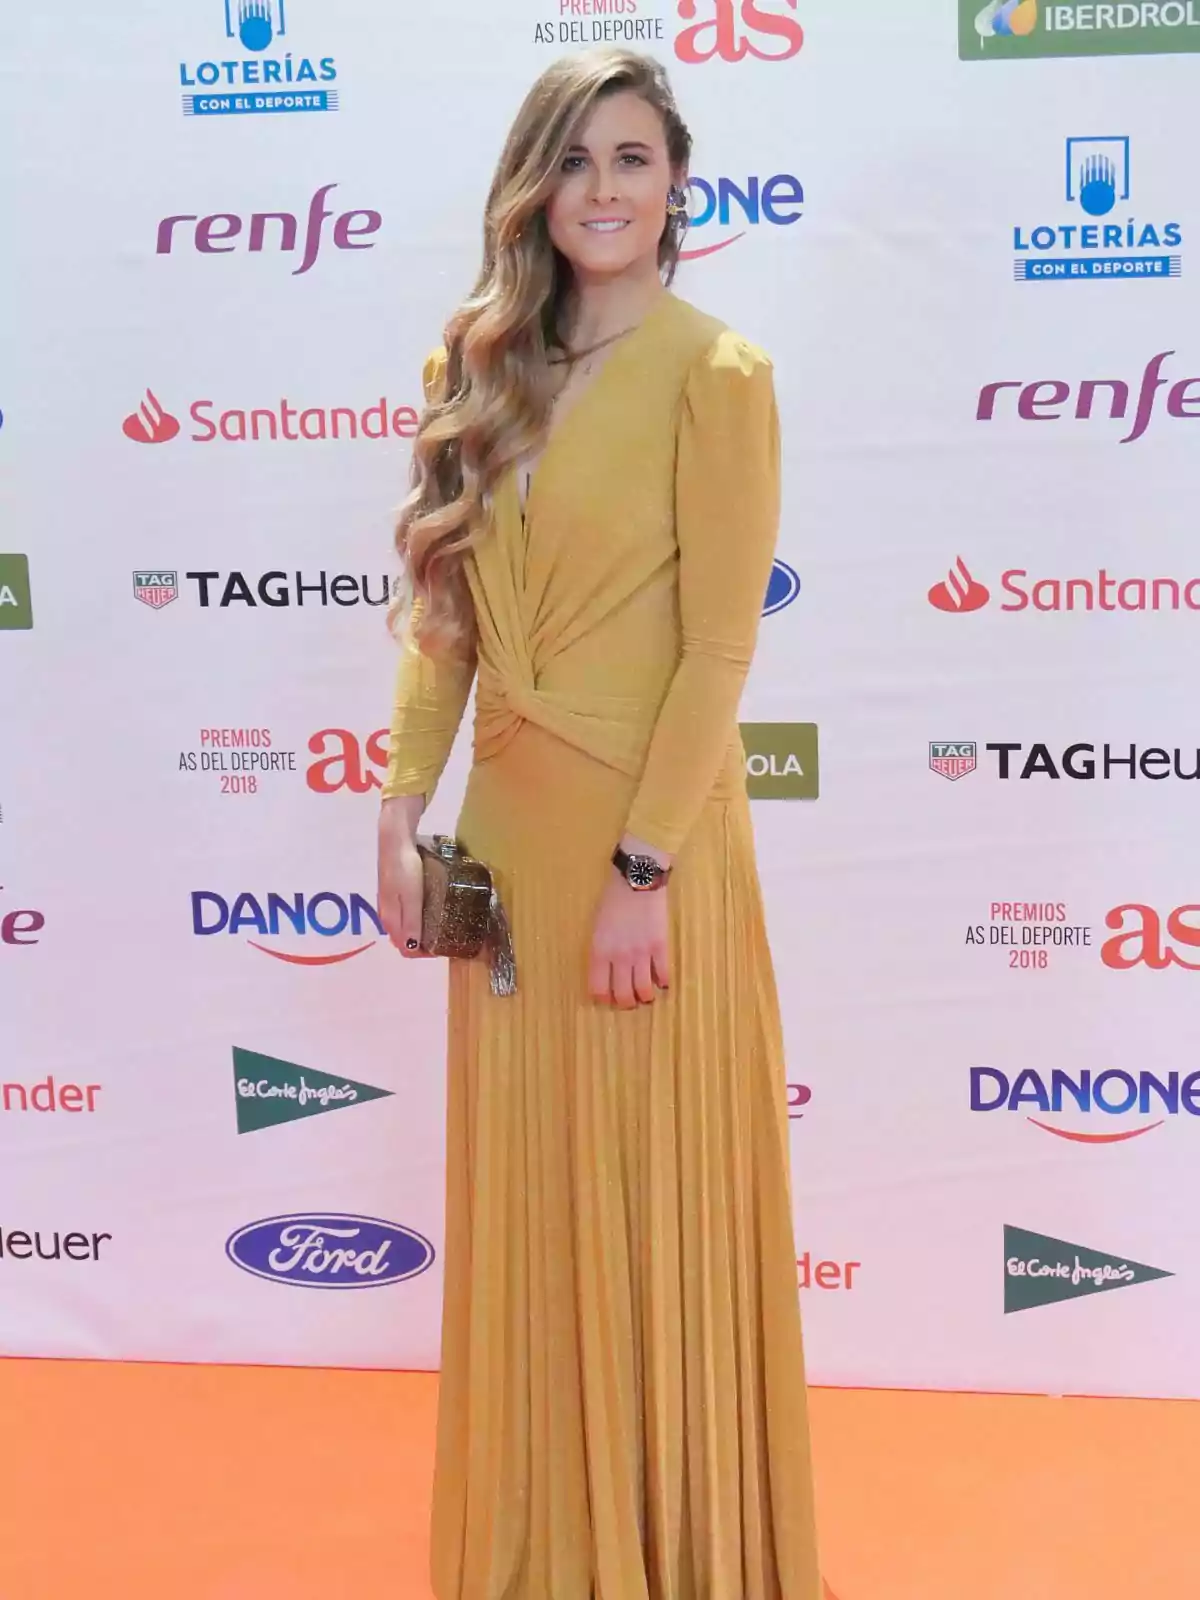 Gisela Pulido con un vestido largo dorado posa en una alfombra naranja frente a un fondo con logotipos de varias marcas.